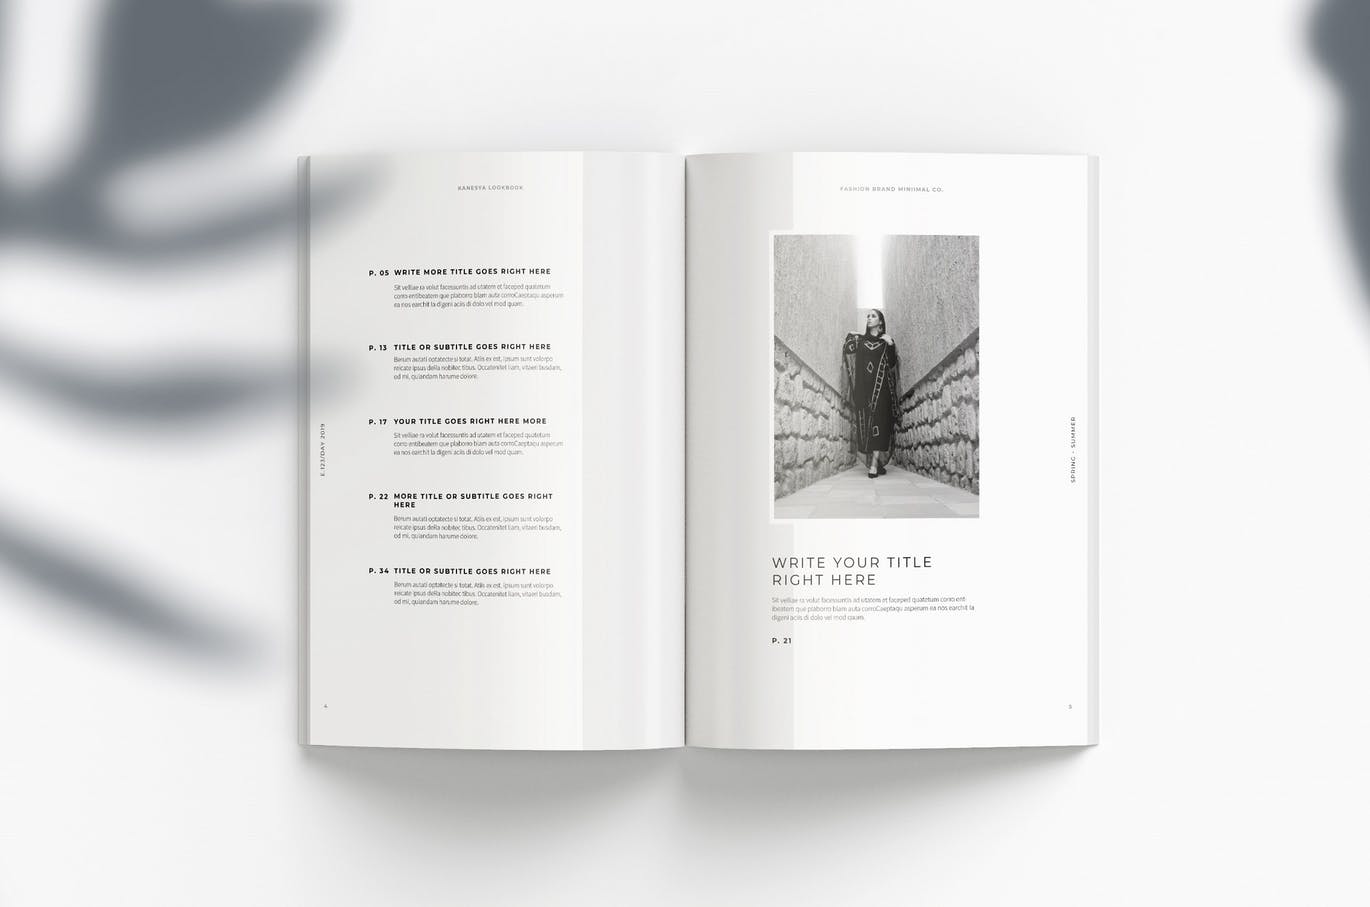 时尚/摄影/食品/生活方式/建筑主题使用手册画册设计模板 Lookbook插图3